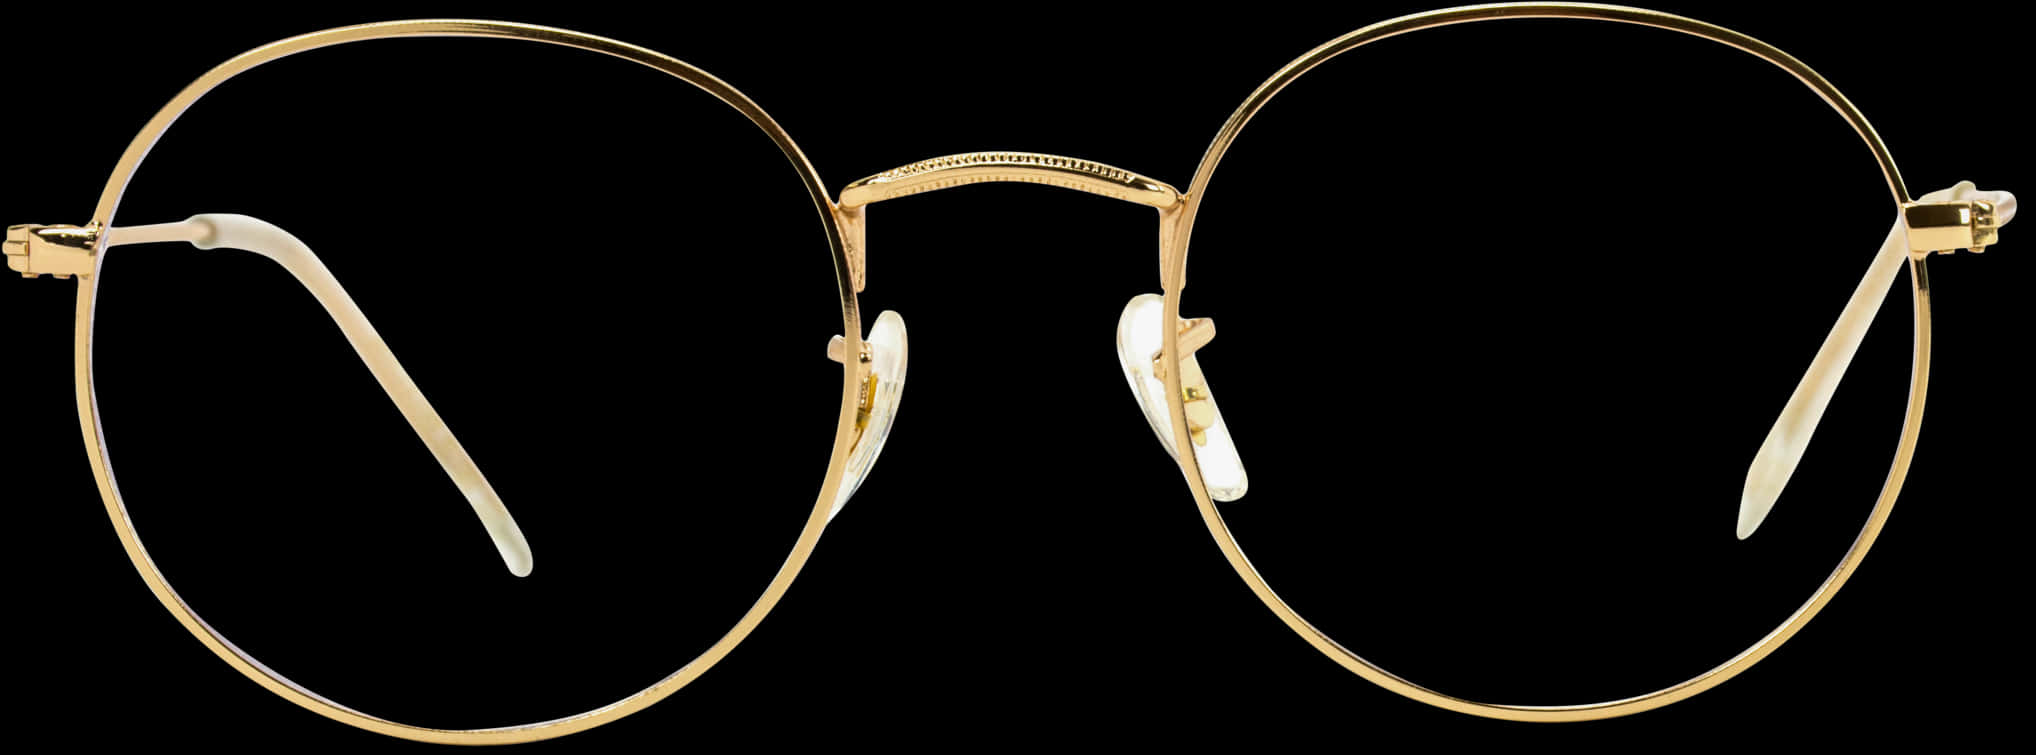 Elegant Gold Round Eyeglasses Isolated PNG image